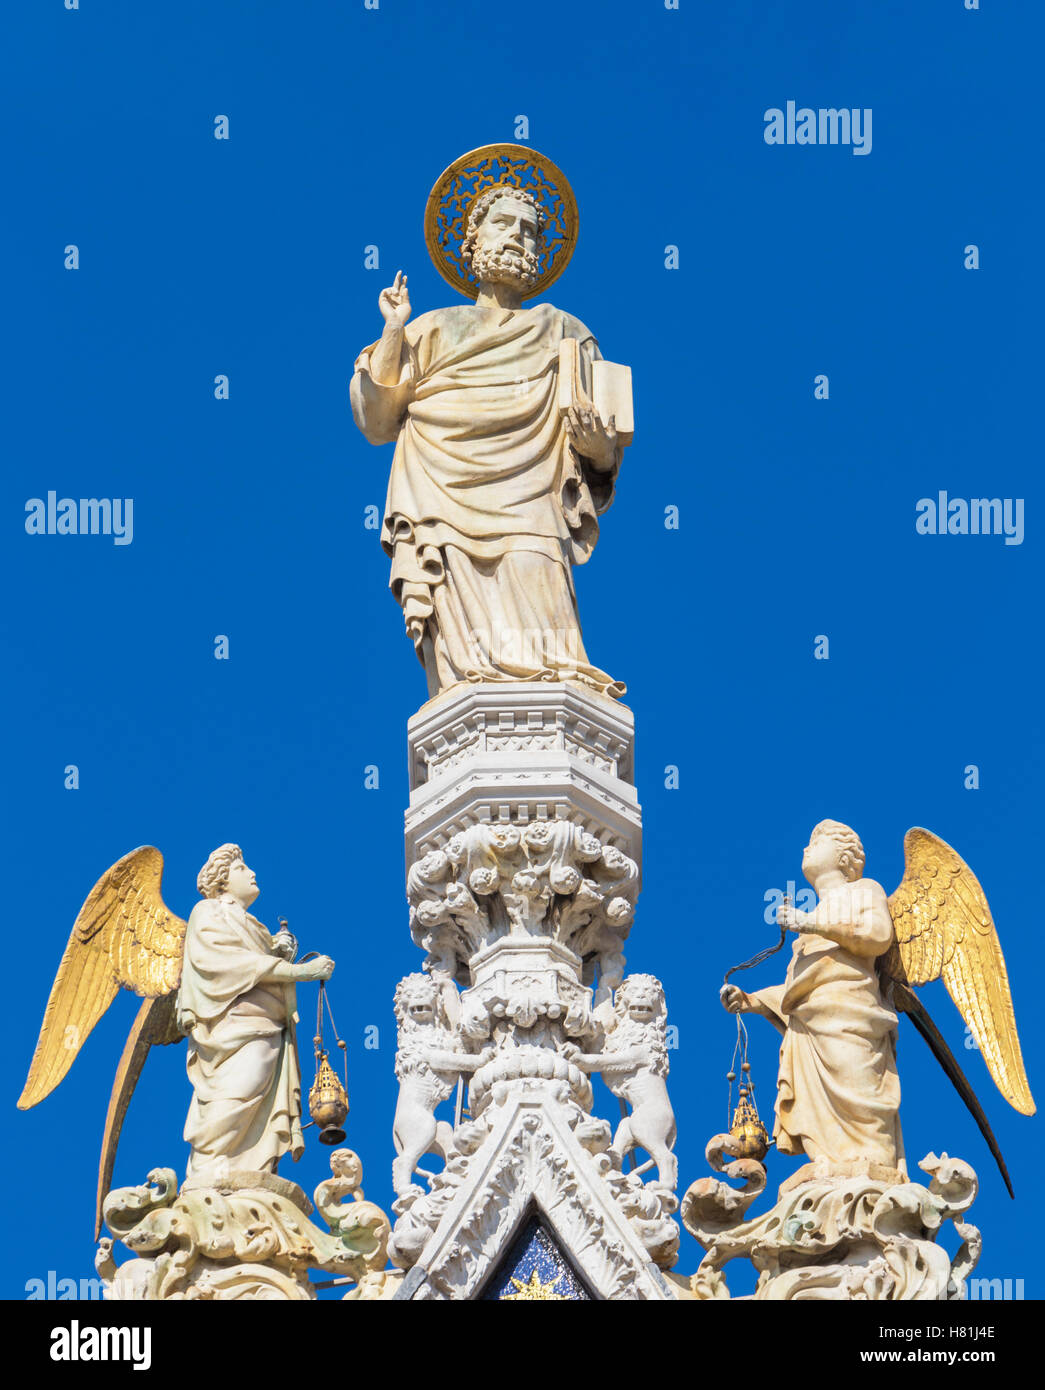 Venecia, Provincia de Venecia, Región de Véneto, Italia. Estatua de San Marcos, Patrono de Venecia, rodeado por los ángeles. Foto de stock